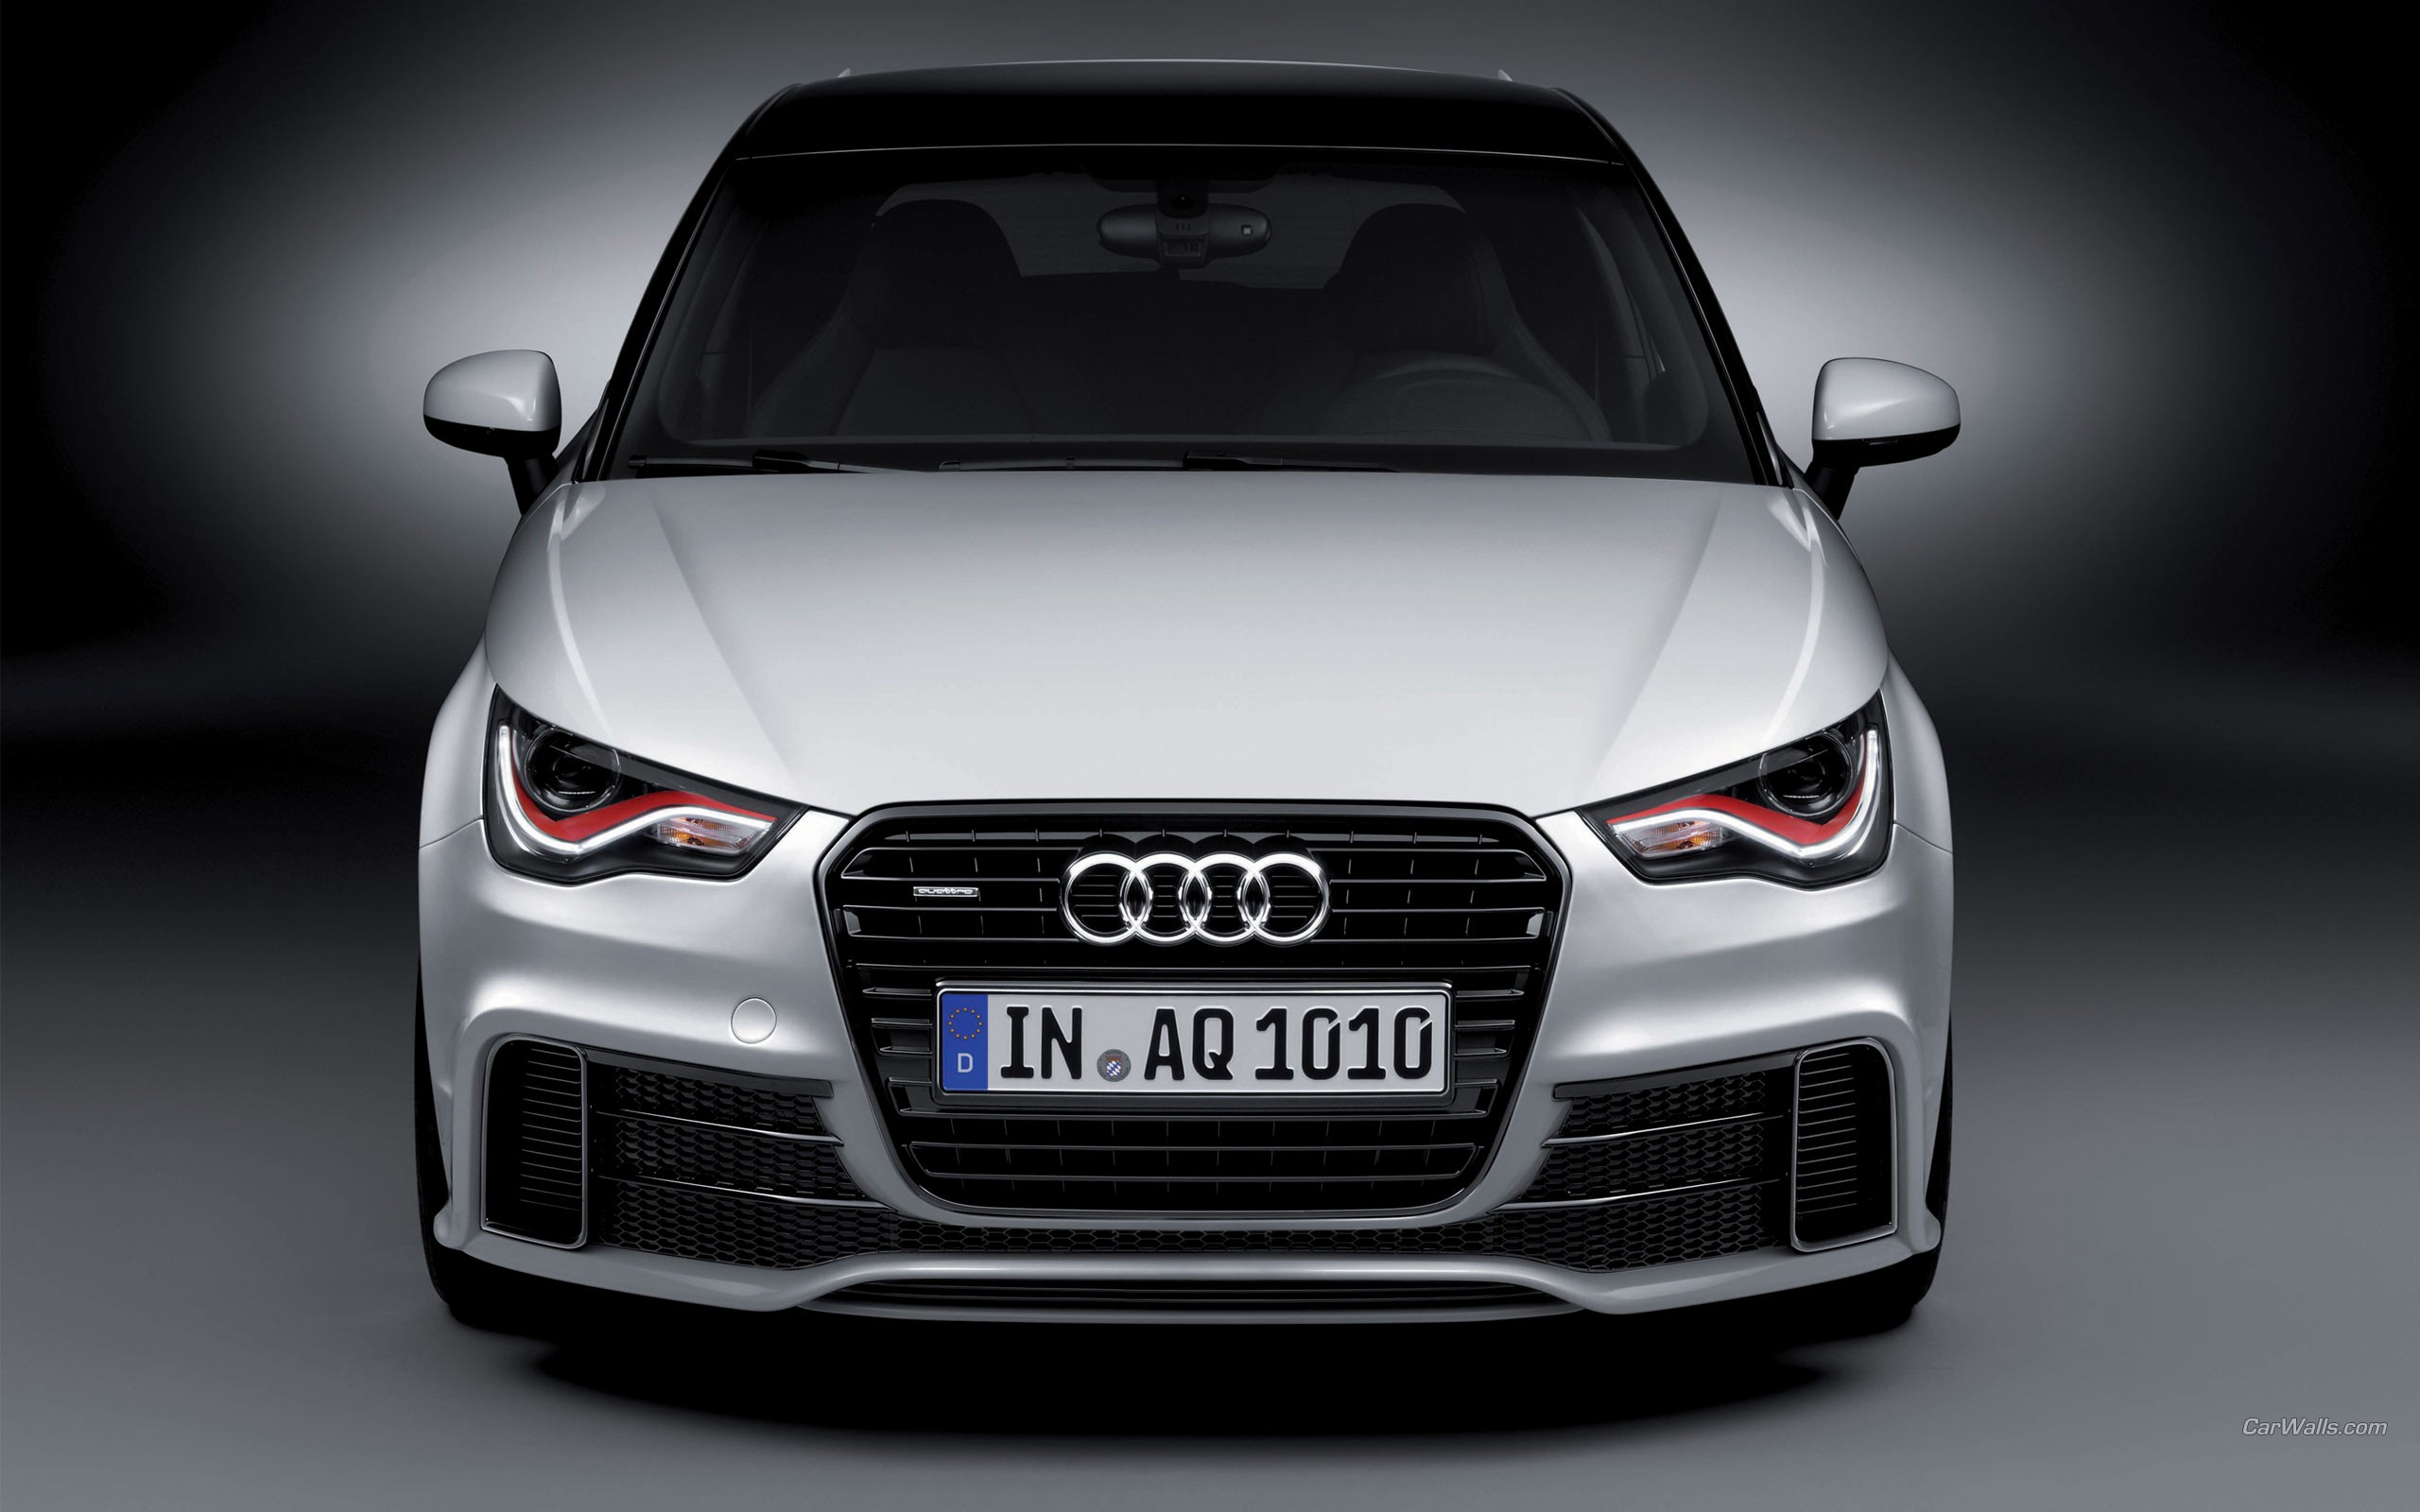 Fonds d'écran Audi A1 : tous les wallpapers Audi A1